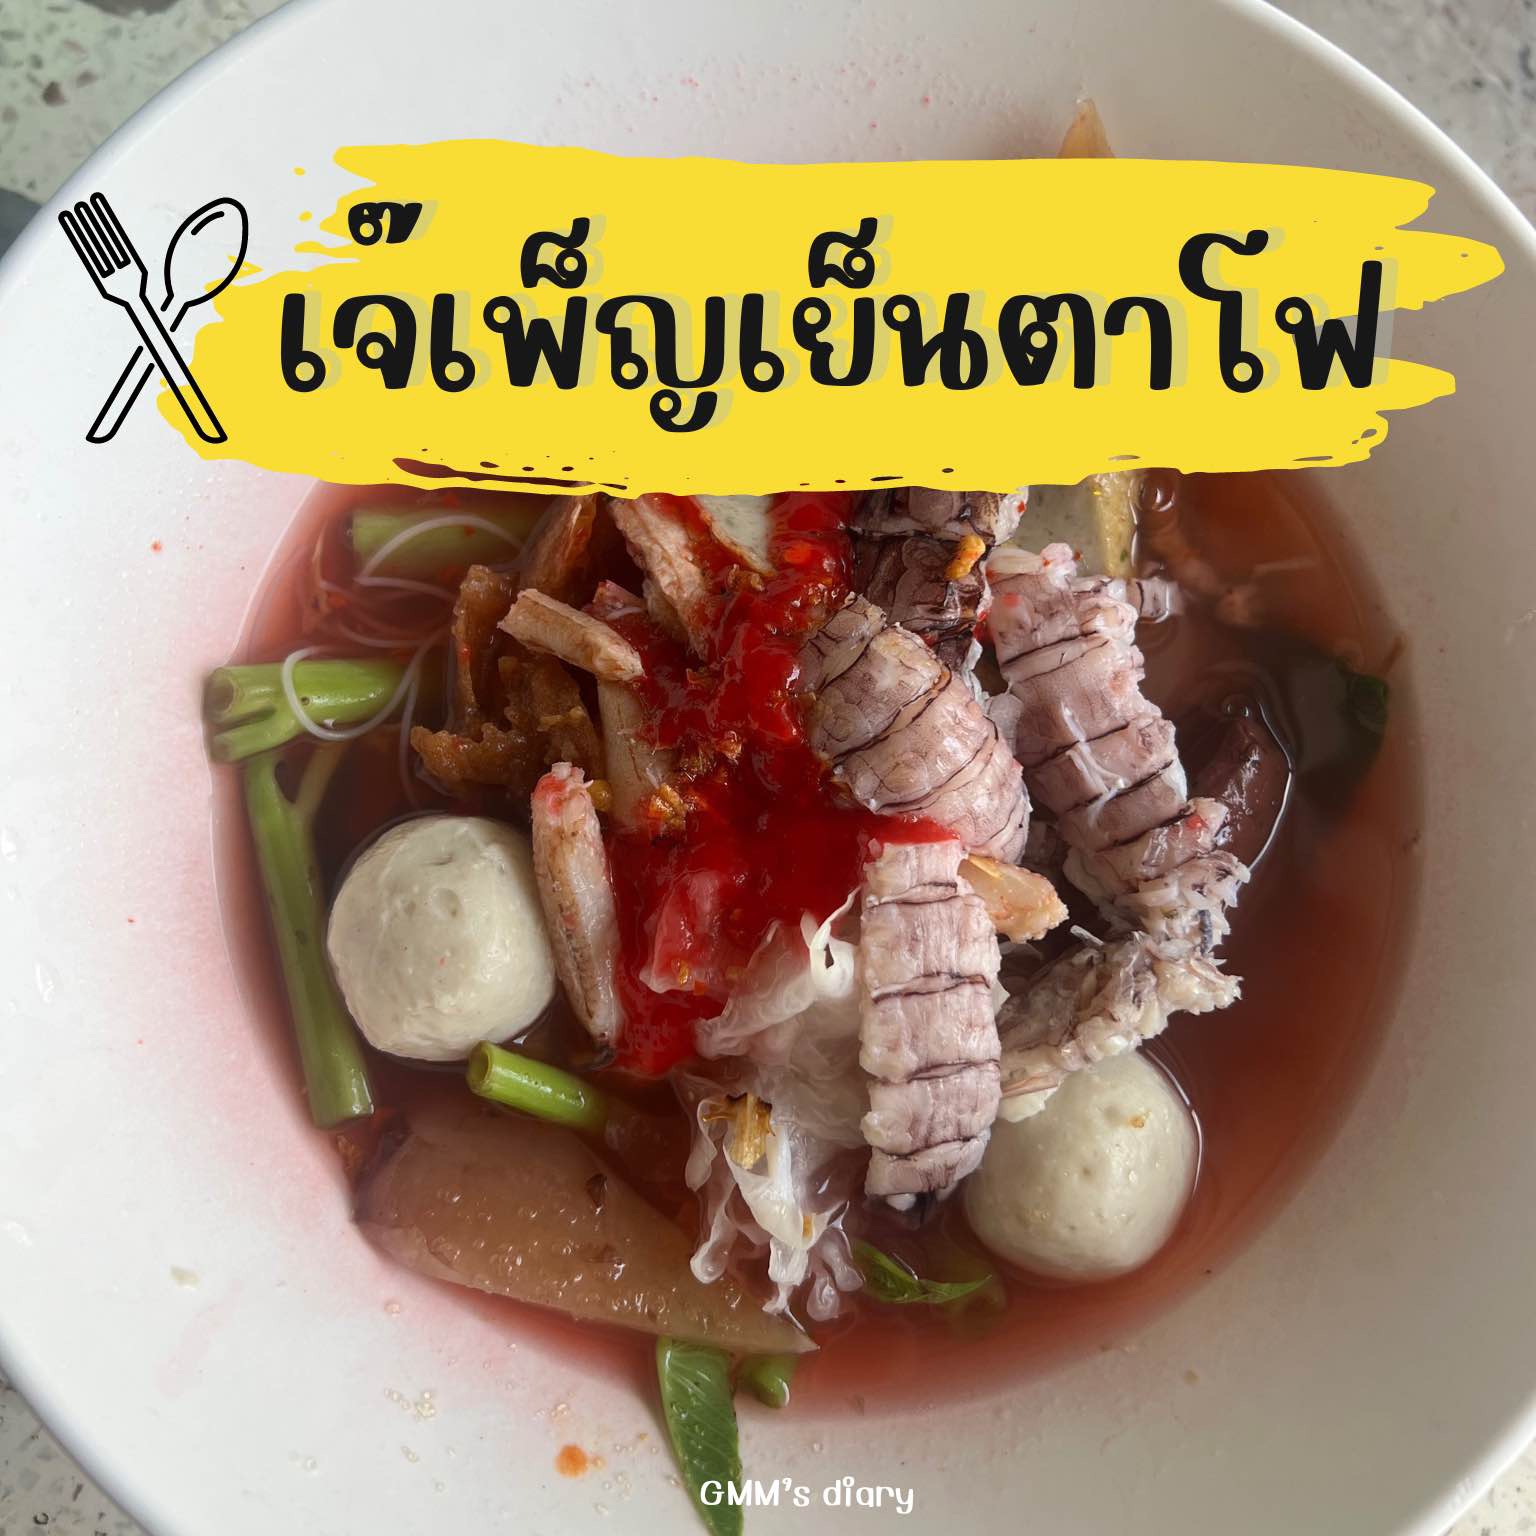 Jay Phen Yentafo, Chanthaburi,虾和小龙虾,满满的,很满足。